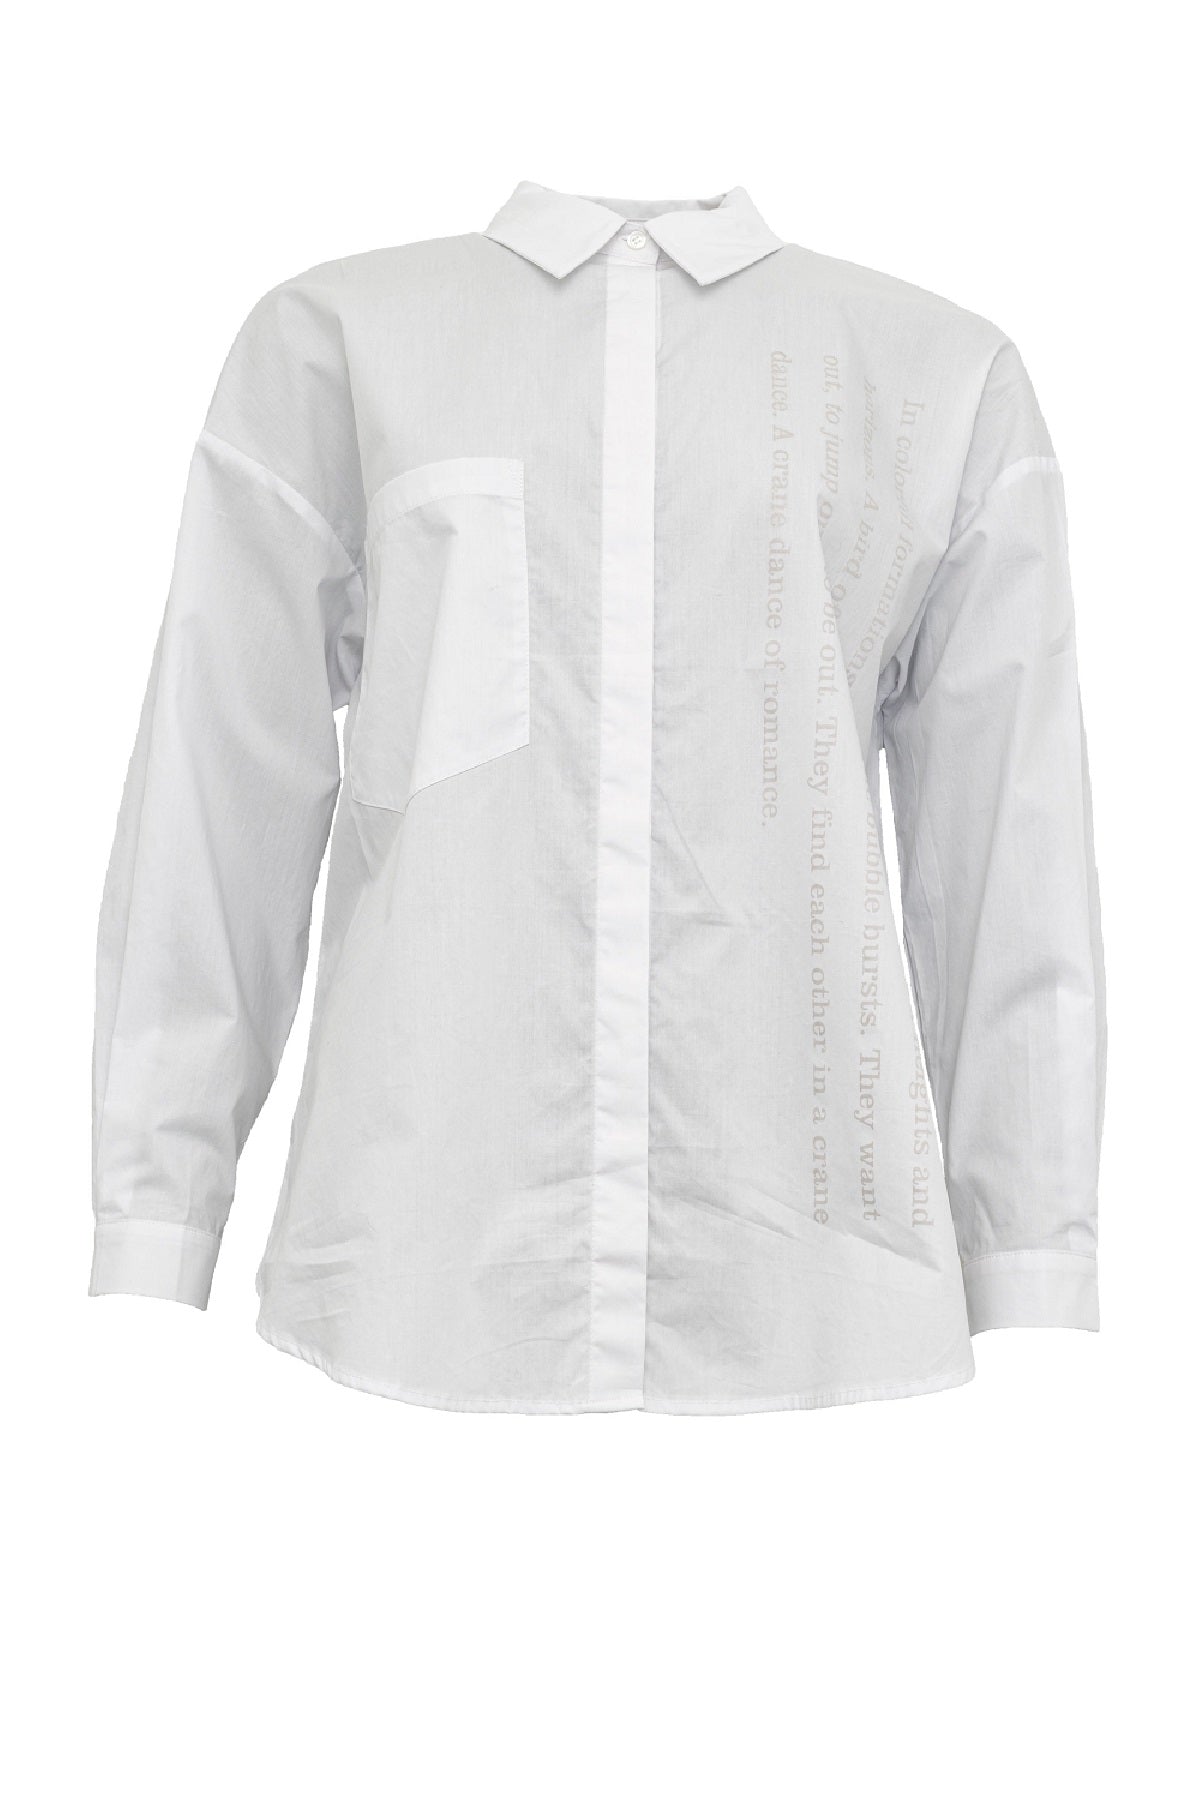 Costamani True shirt 2308104, White